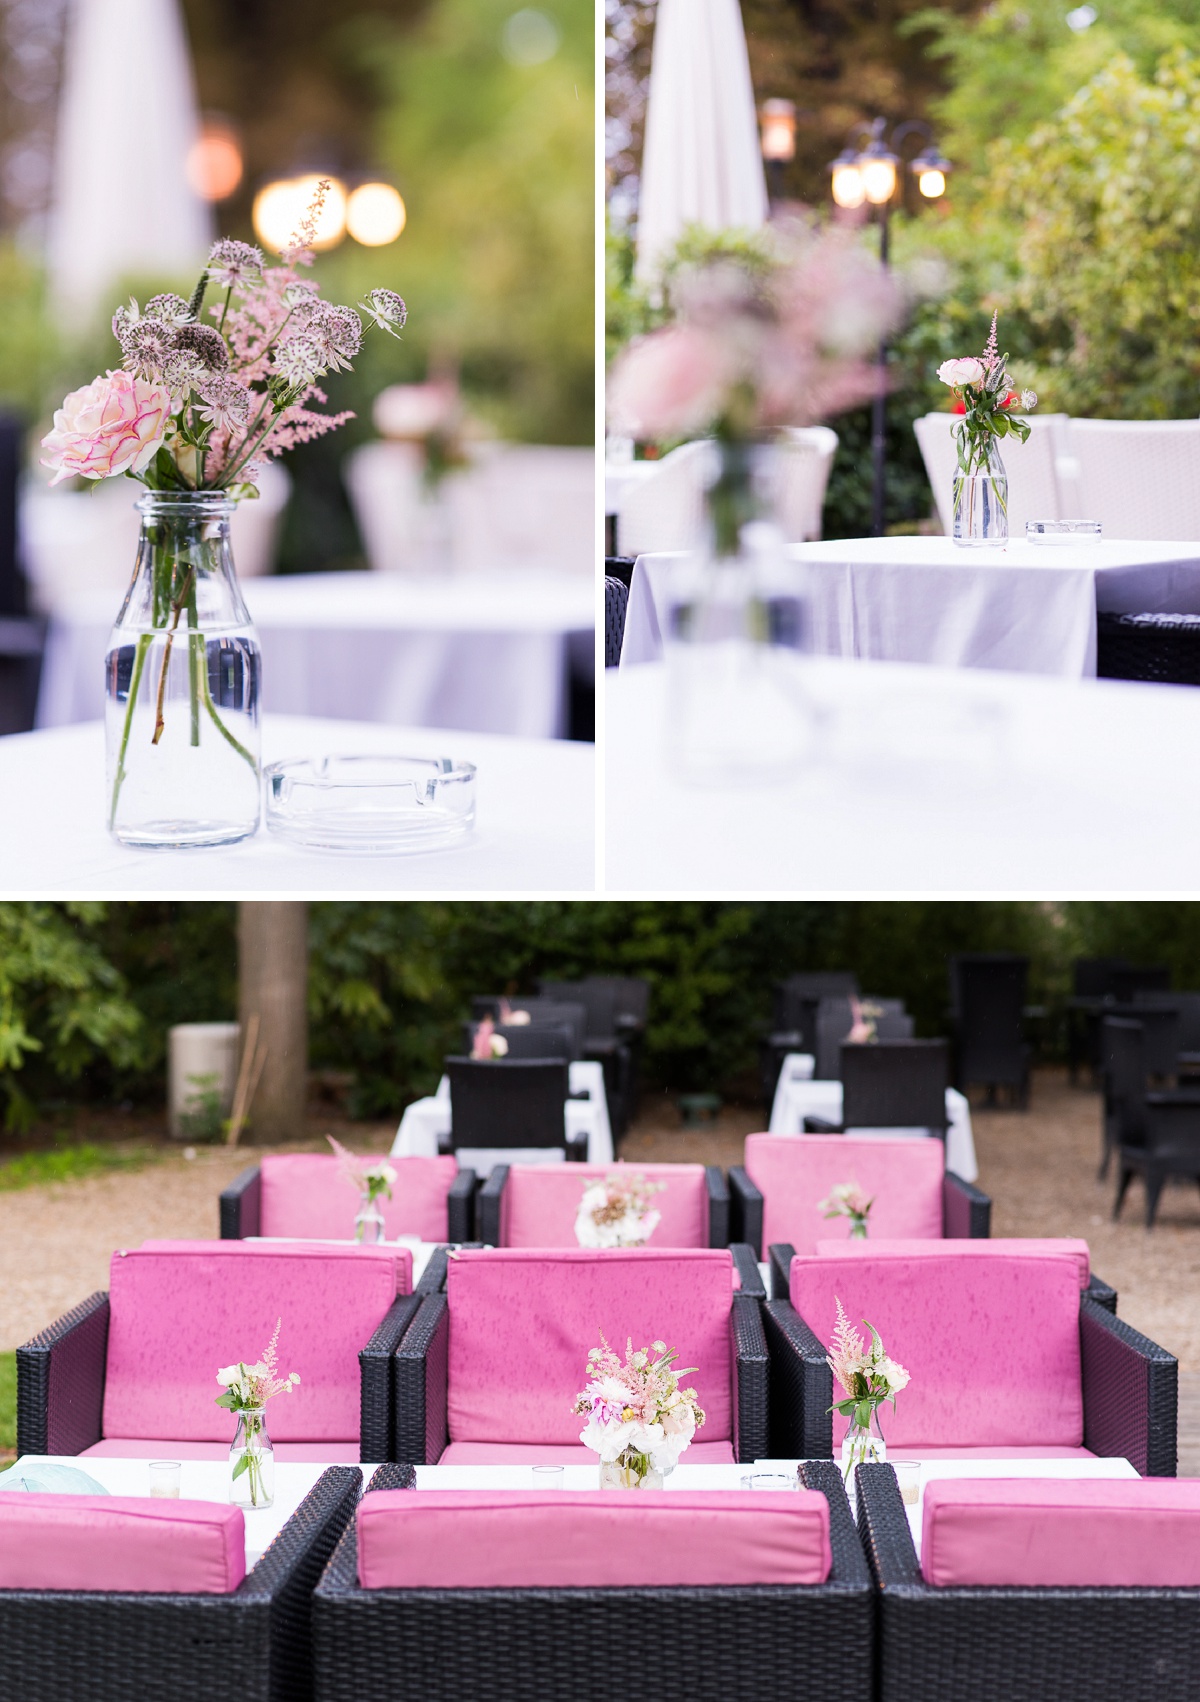 décoration de mariage de jolies fleurs pour embellir votre salle - décoration moderne et classe